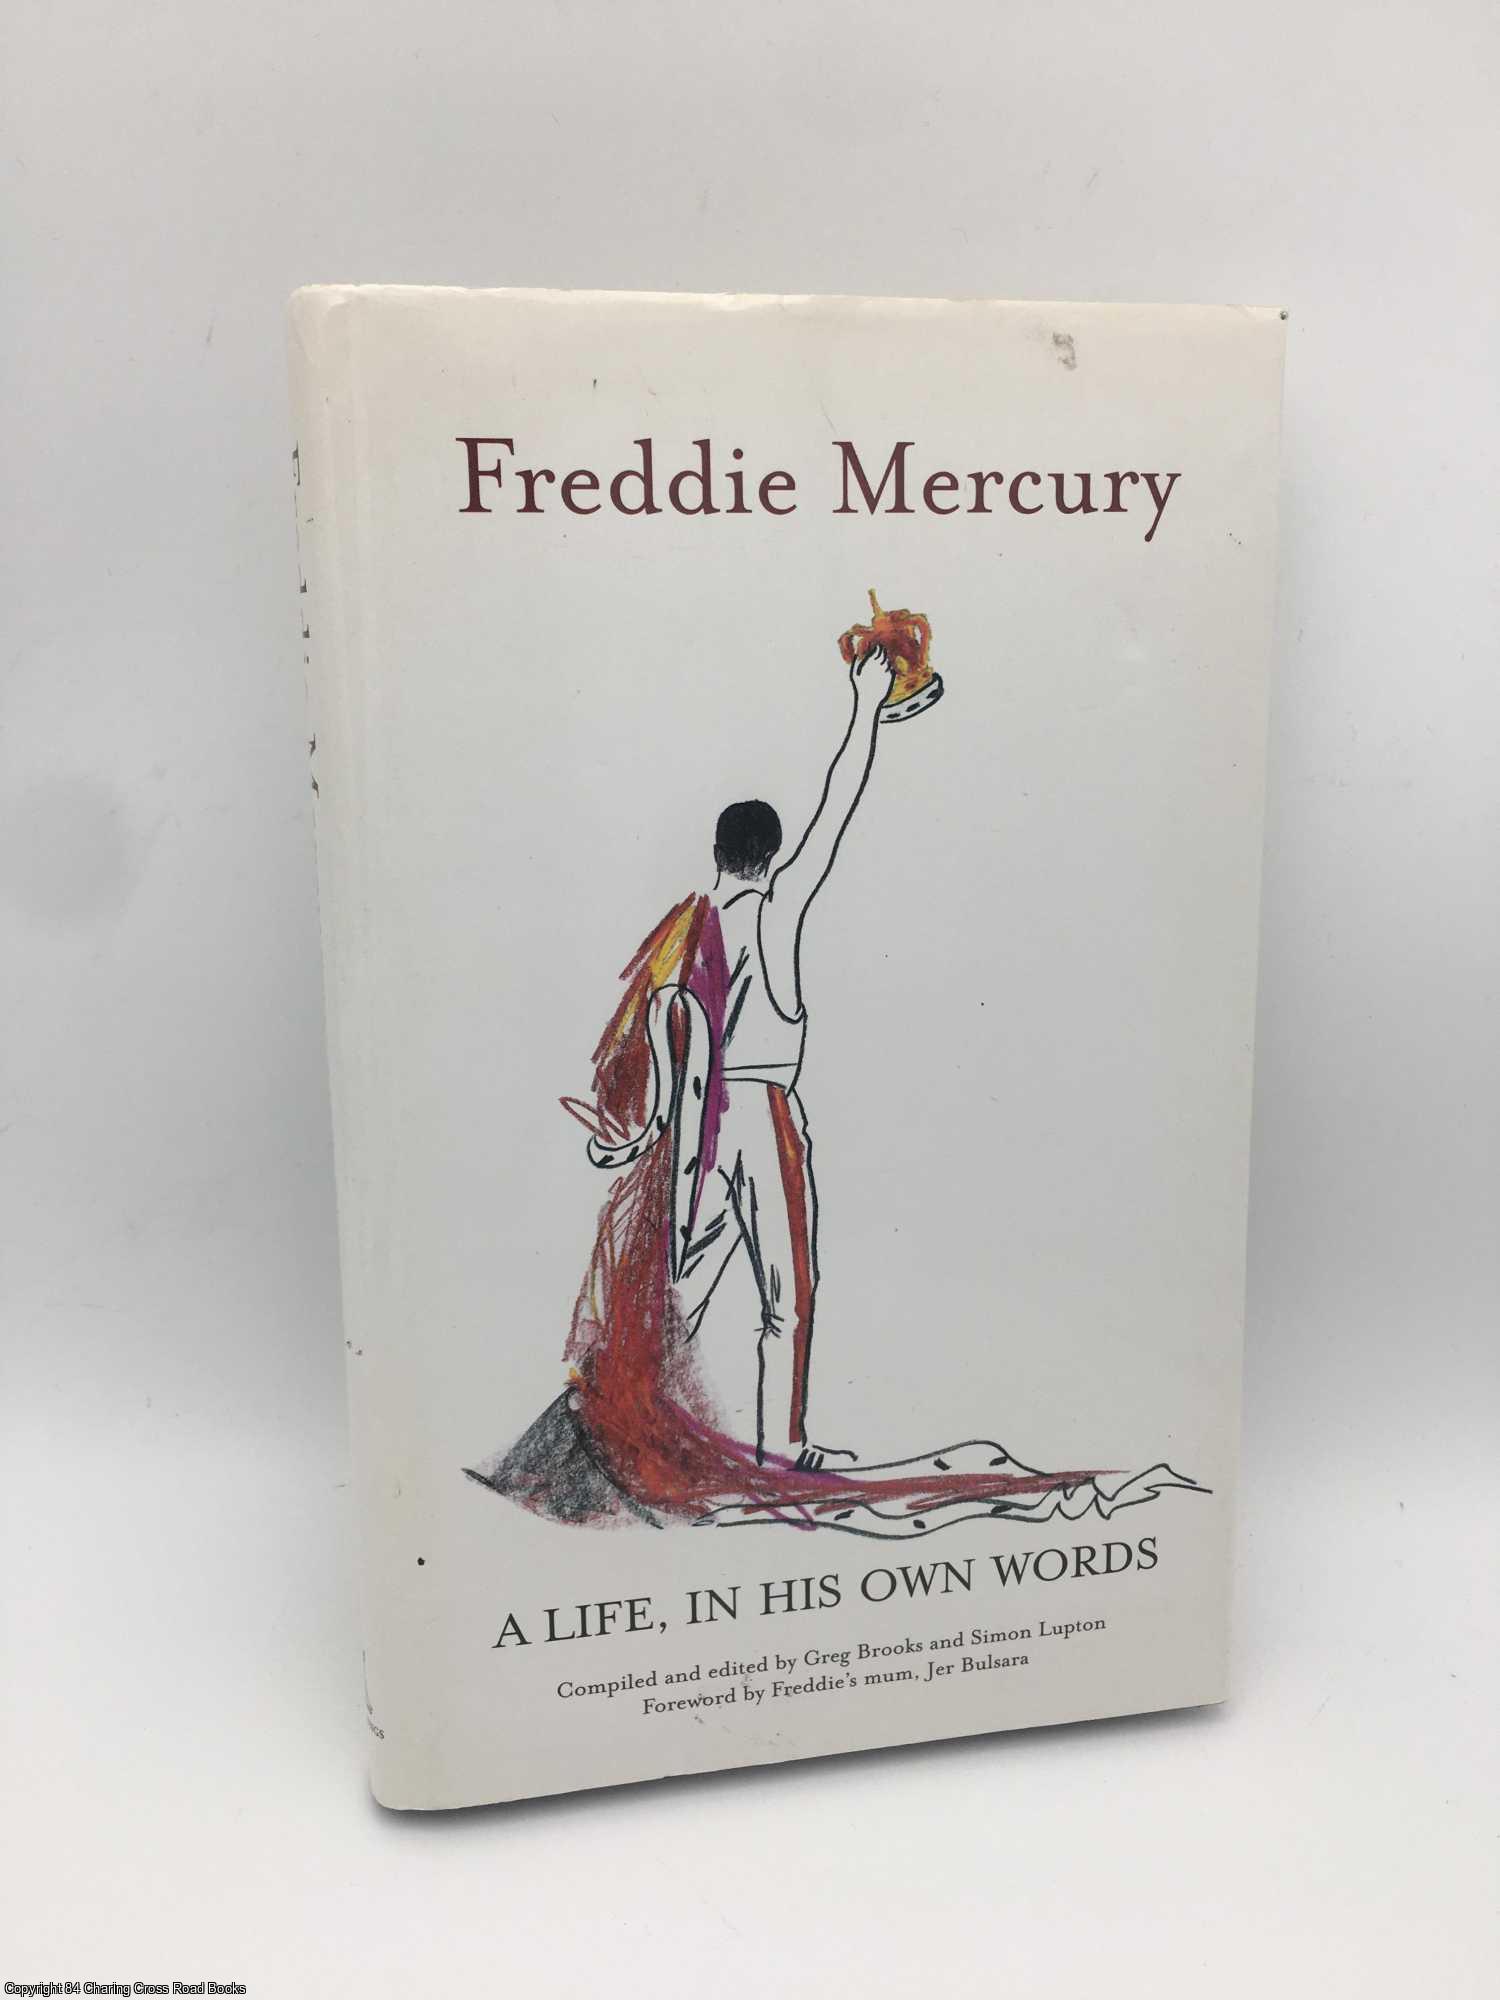 Mercury, Freddie - Freddie Mercury a Life, in His Own Words